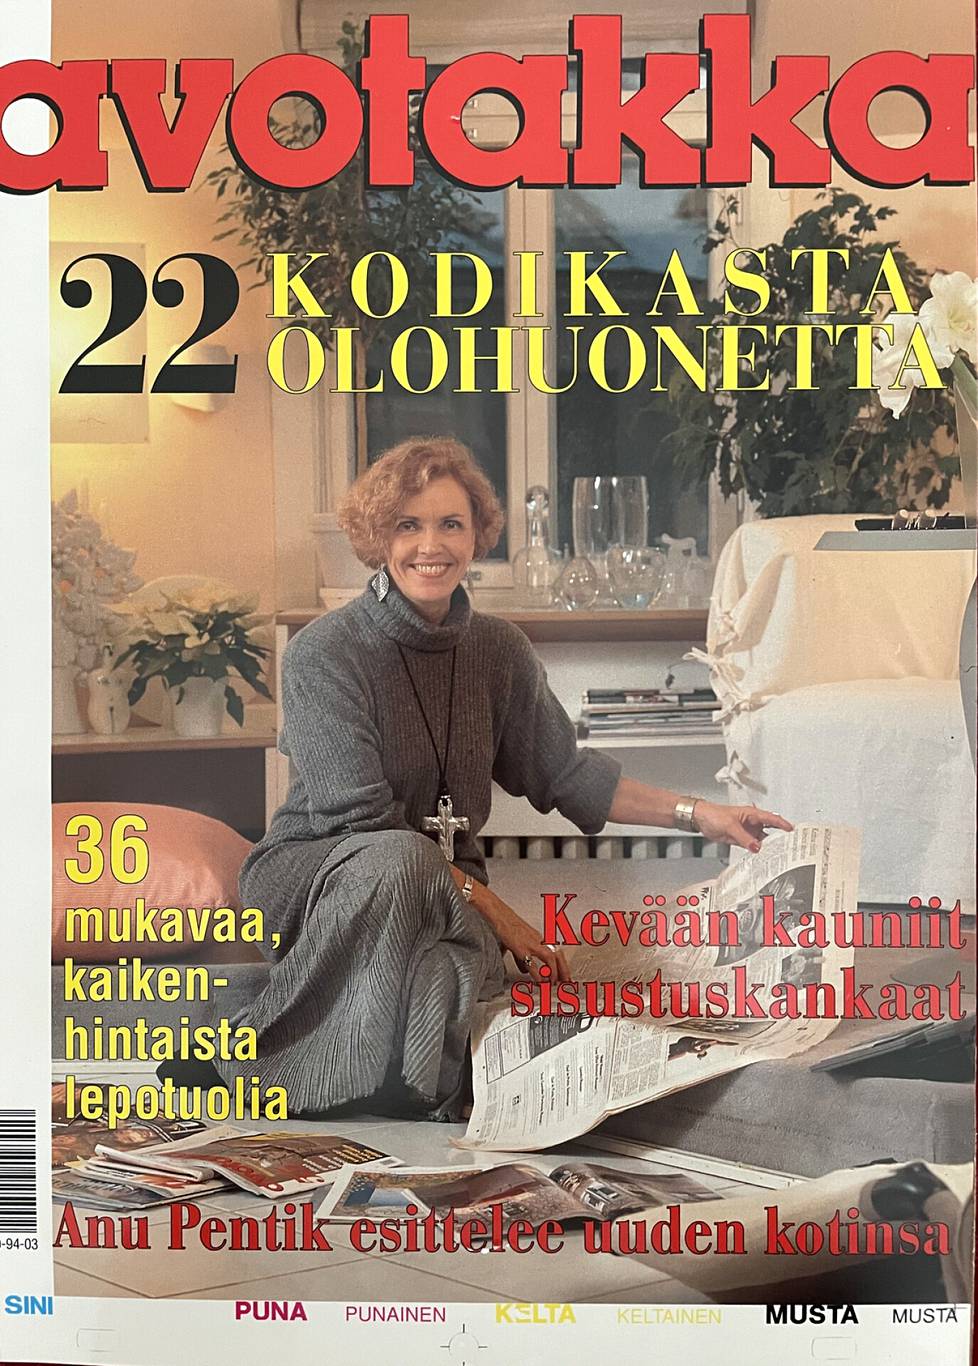 Enja Vironmäki istumassa omassa olohuoneessaan Avotakan 80-luvun kansikuvassa. Enja Vironmäki oli aikansa suuri sisustajalahjakkuus.